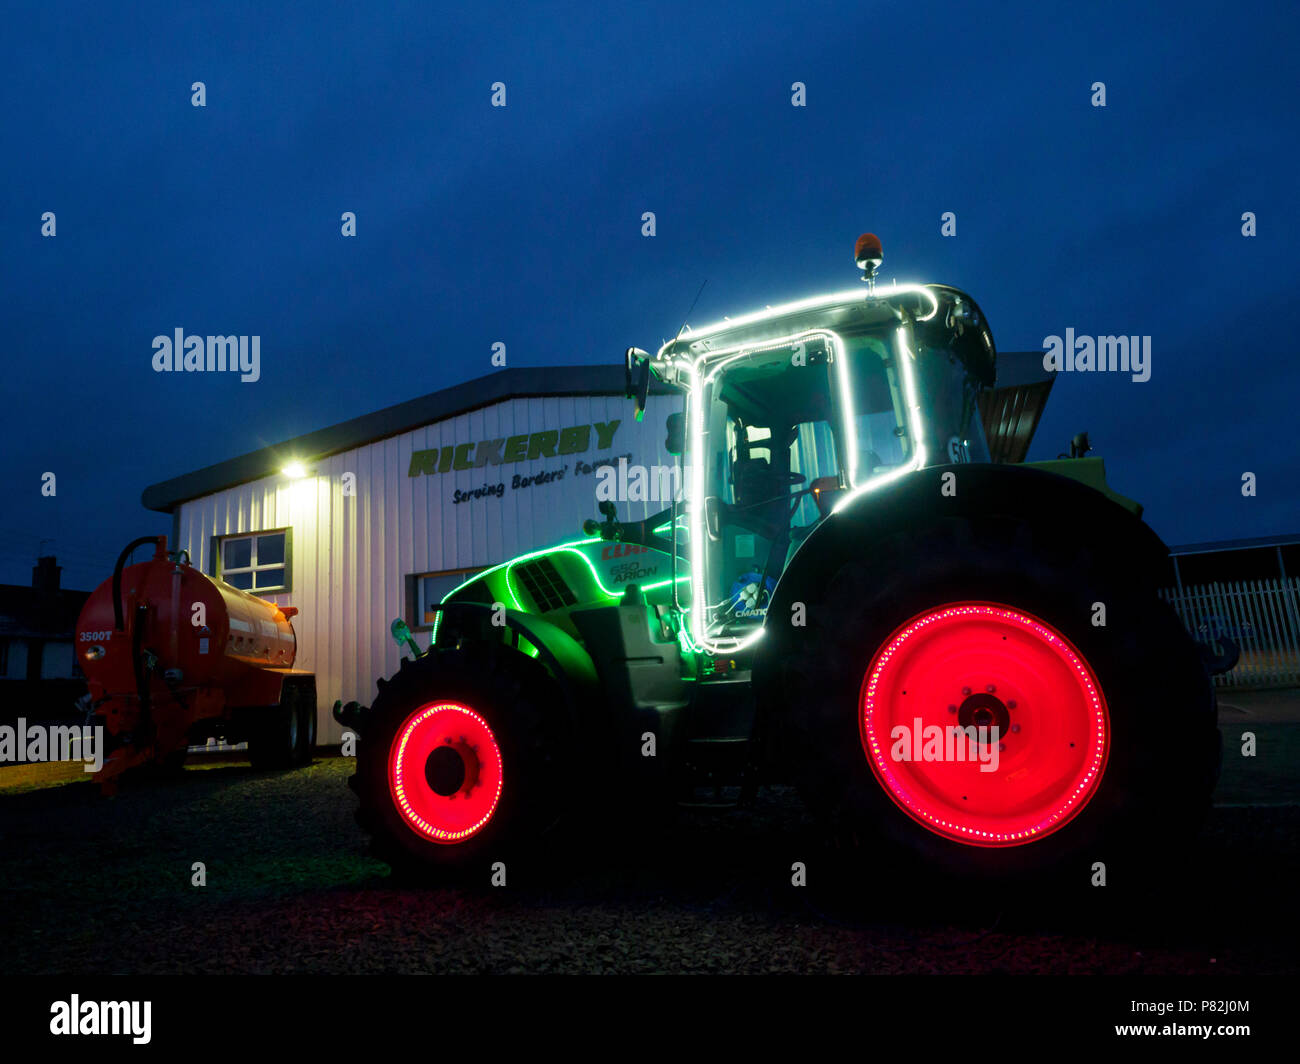 Weihnachten Werbung - bei Cornhill in Northumberland, Traktor Händler  Riccurby verwenden LED-Streifen ein Traktor und Kabine auf dem Vorplatz zu  verzieren Stockfotografie - Alamy